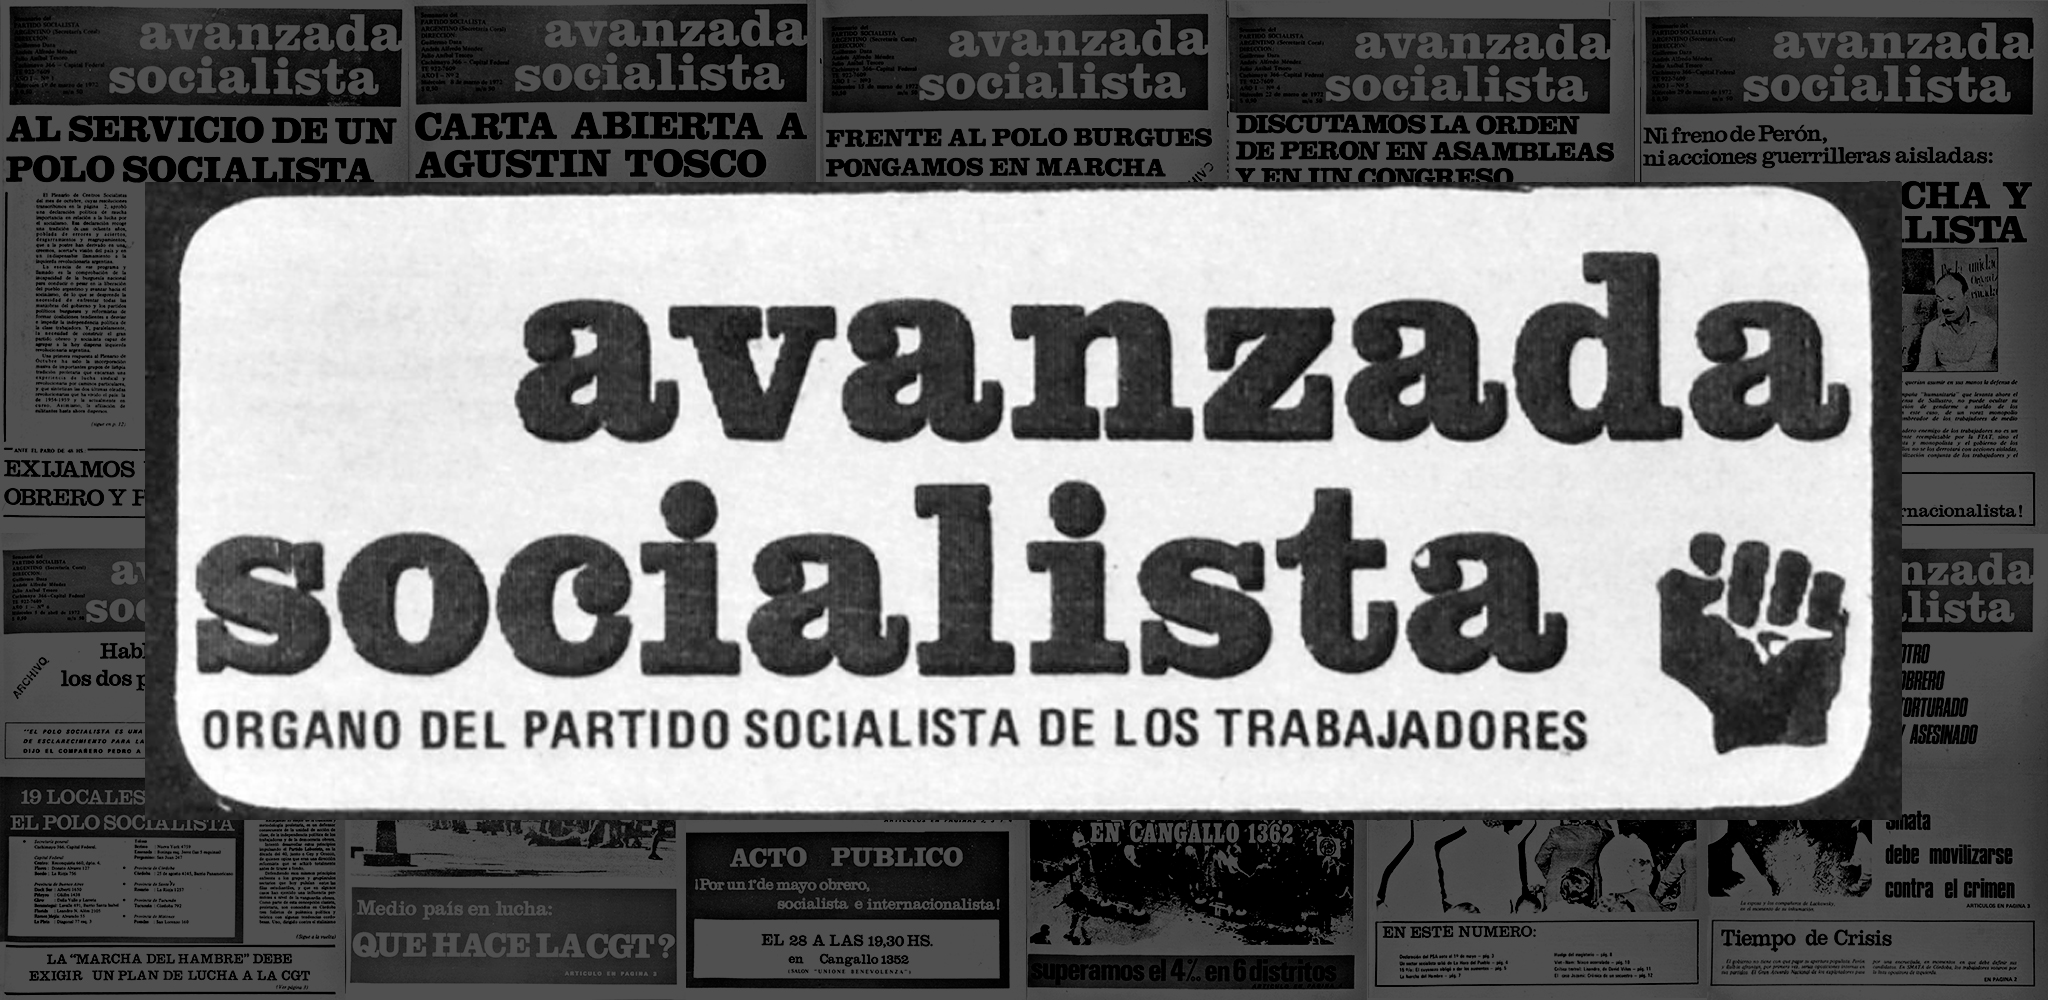 Avanzada Socialista (1976)